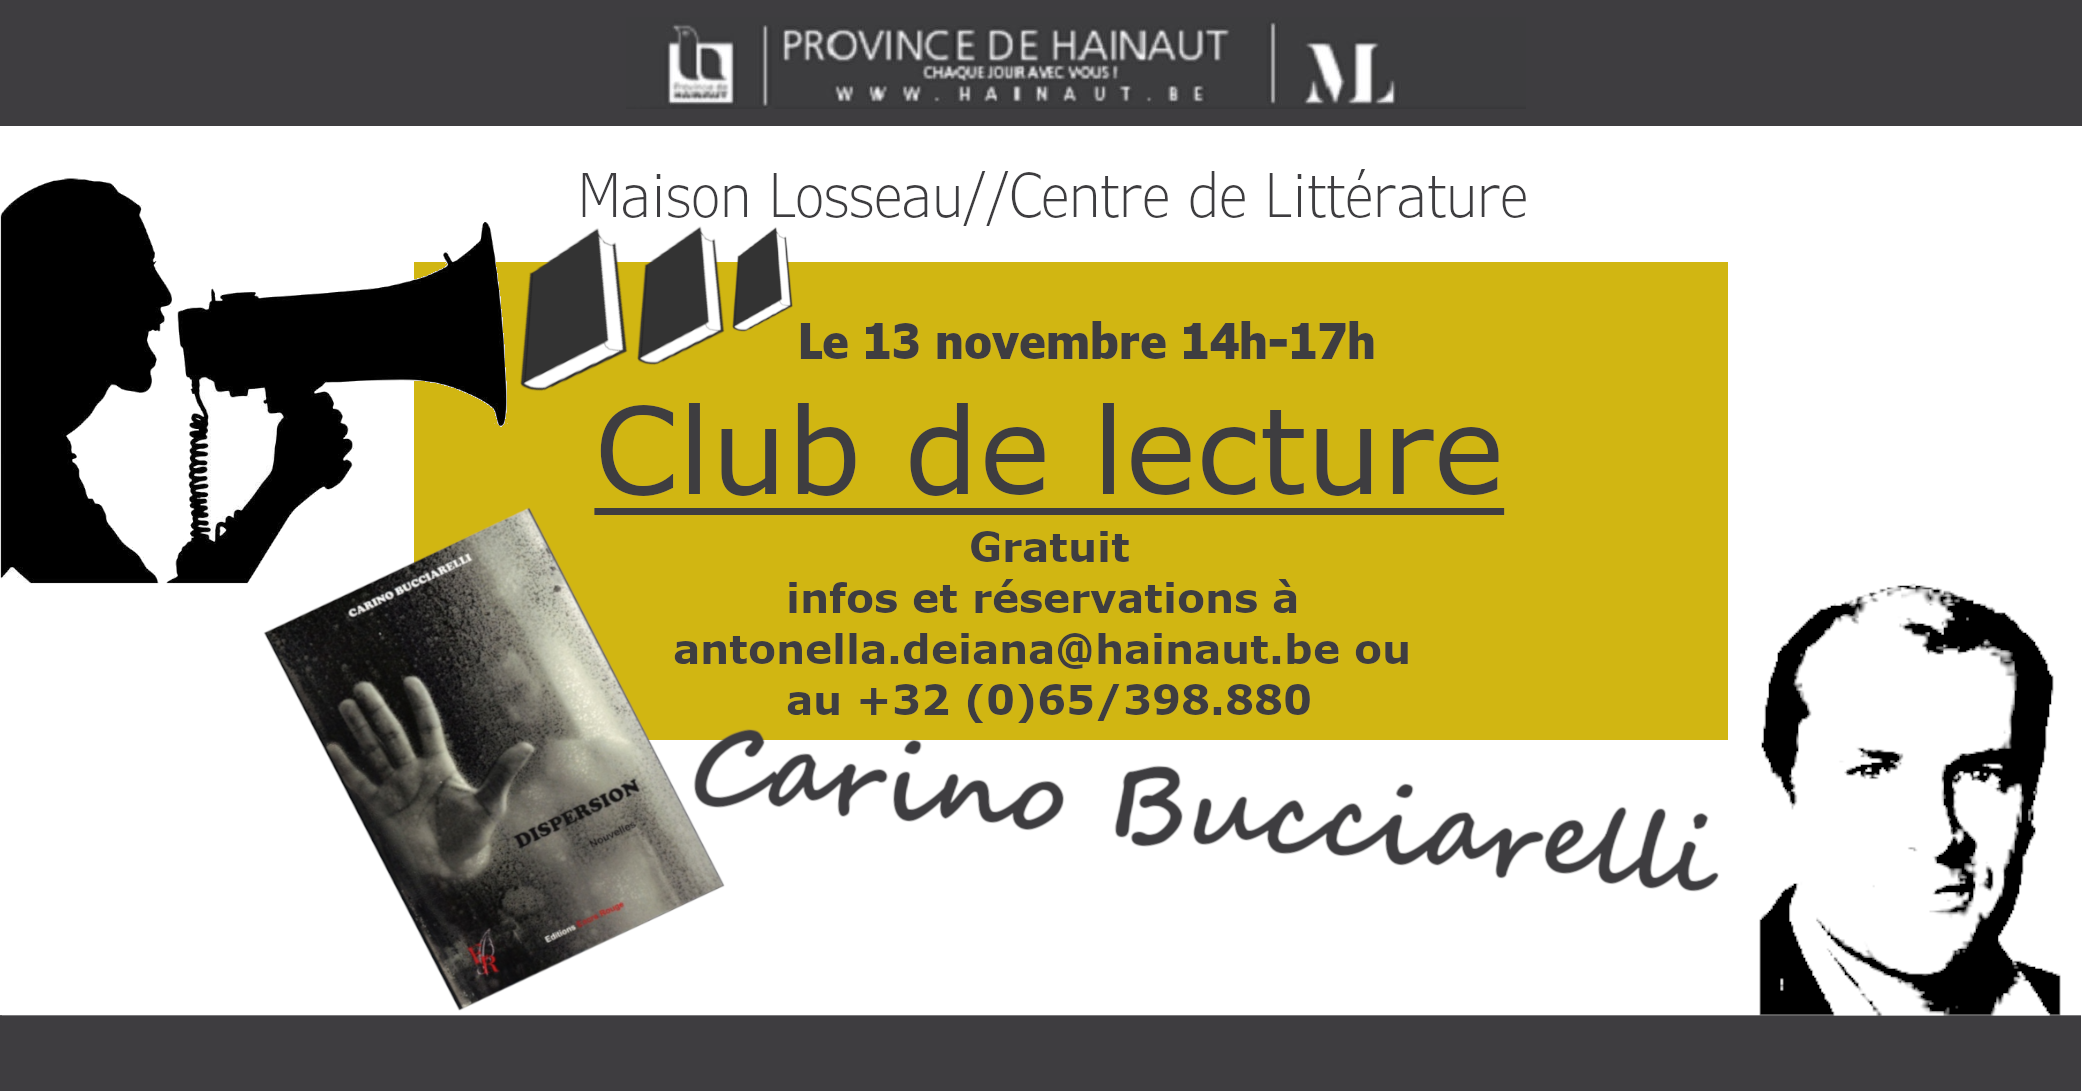 Club de lecture Maison Losseau Carino Bucciarelli